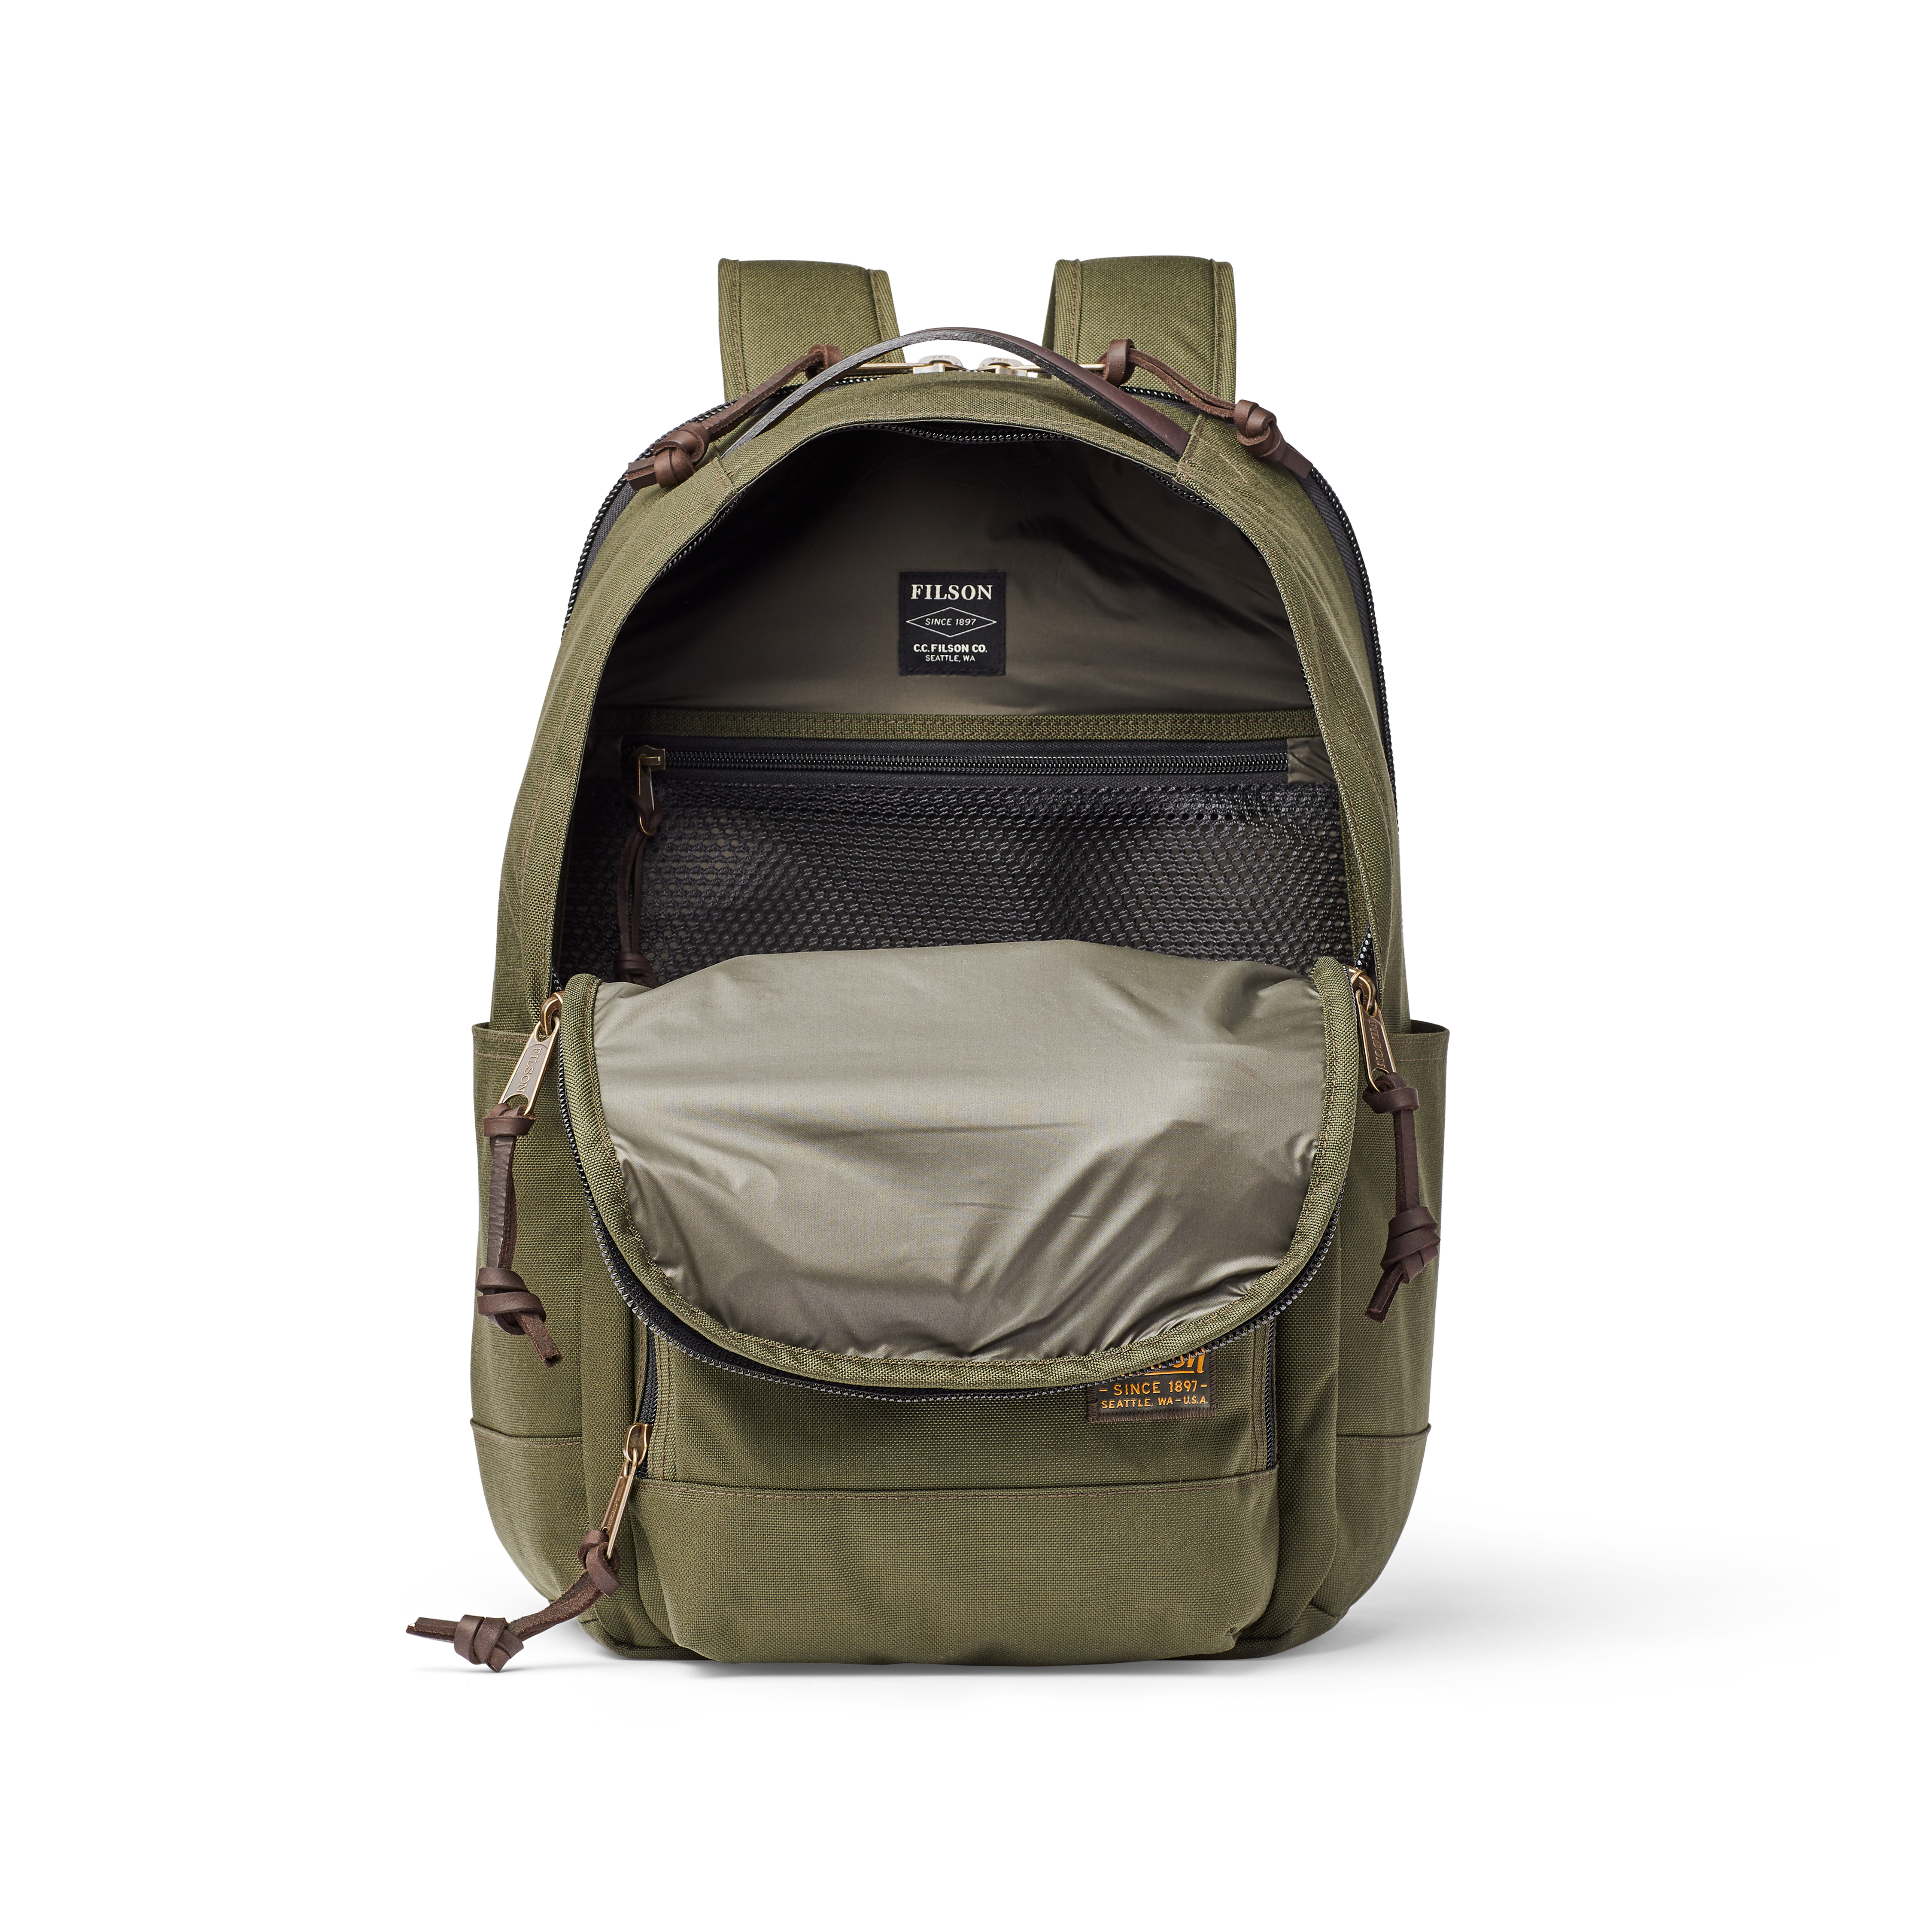 Filson Dryden Nylon Backpack - 25L - Otter Green | Backpacks